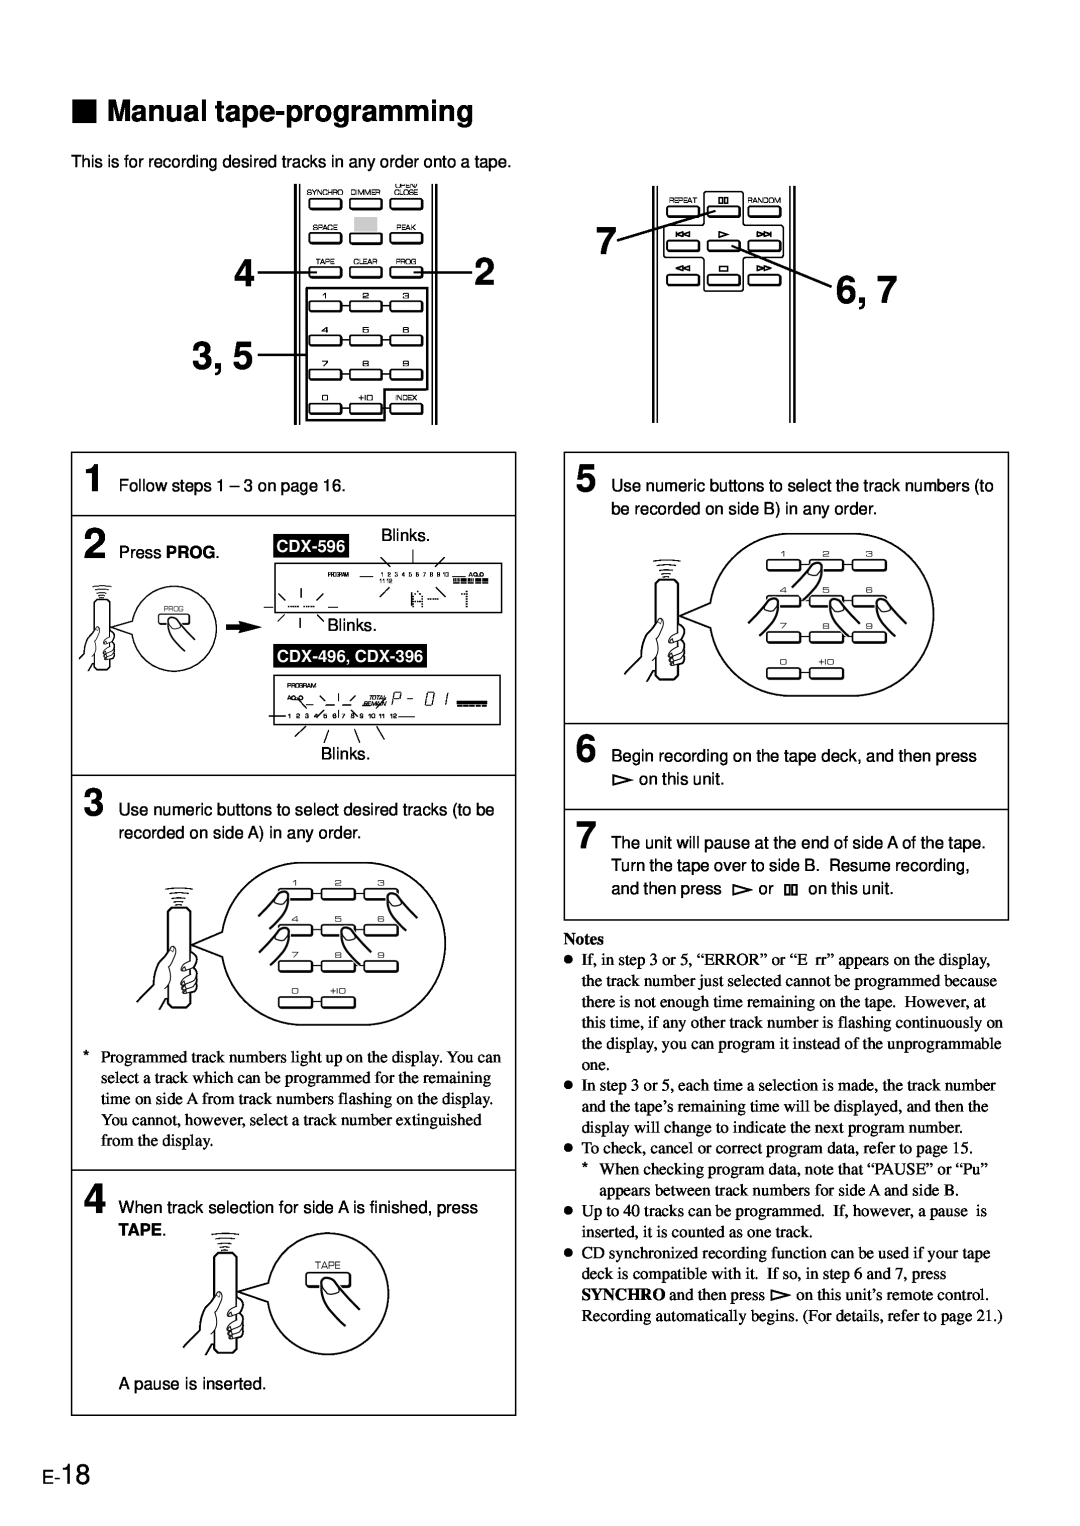 Yamaha owner manual Manual tape-programming, CDX-596, CDX-496, CDX-396 